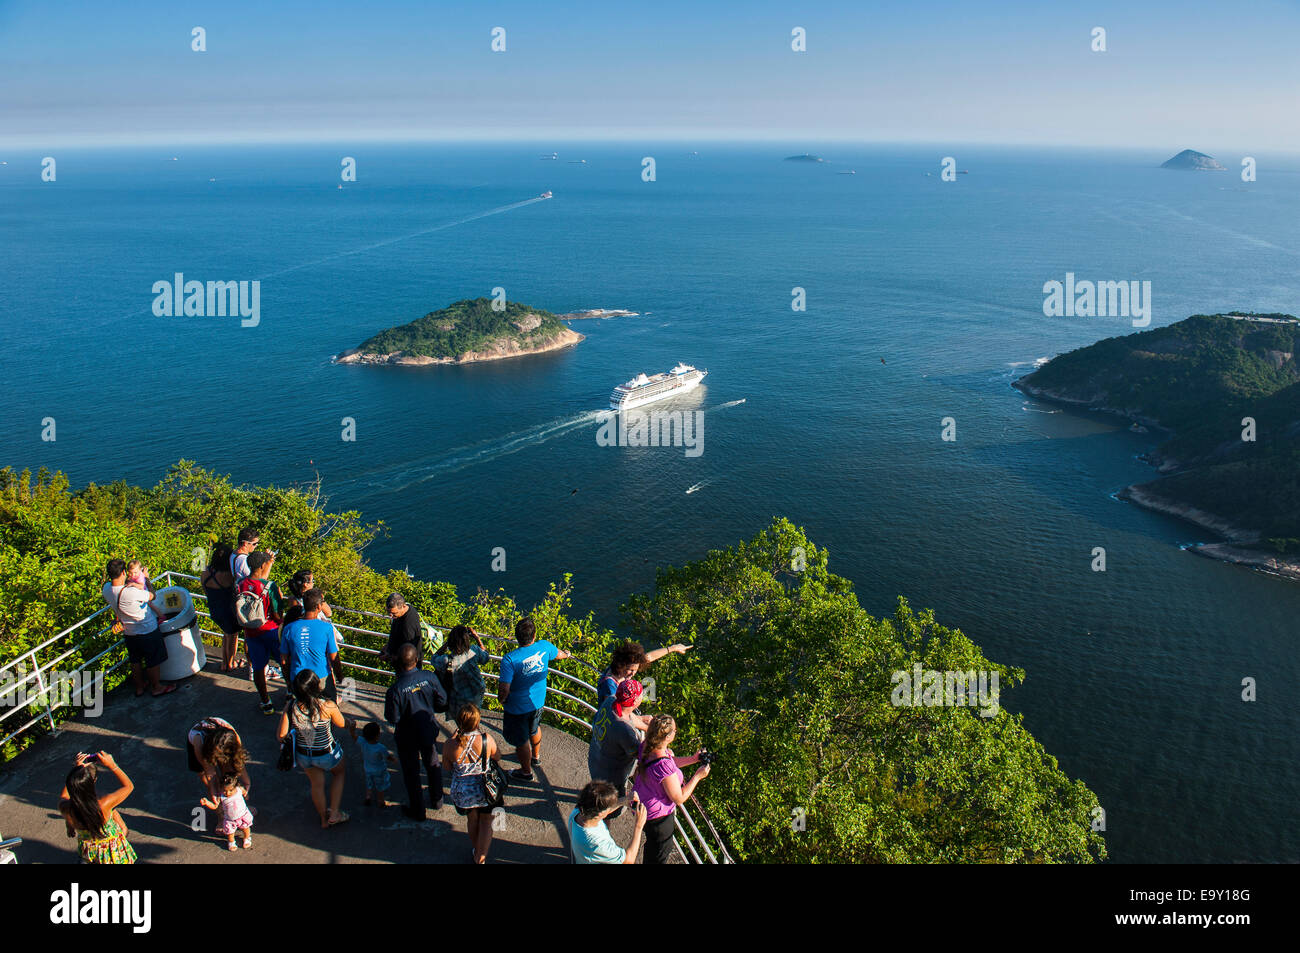 View from the Sugarloaf Mountain or Pão de Açúcar onto a cruise ship, Rio de Janeiro, Brazil Stock Photo